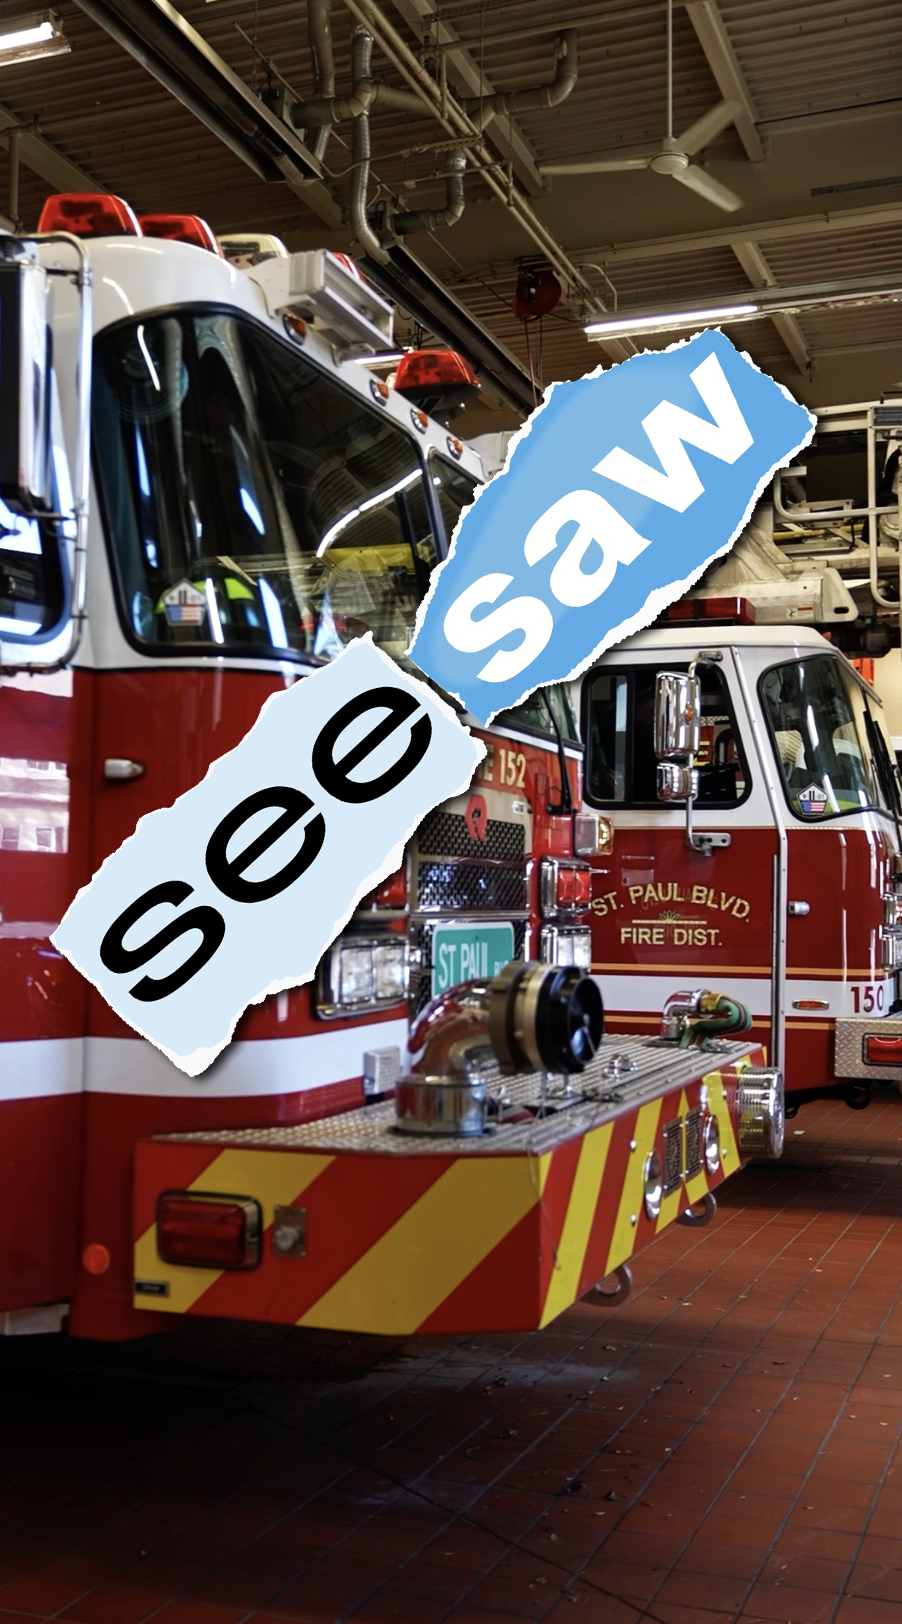 St Paul Boulevard Fire Department SEESAW